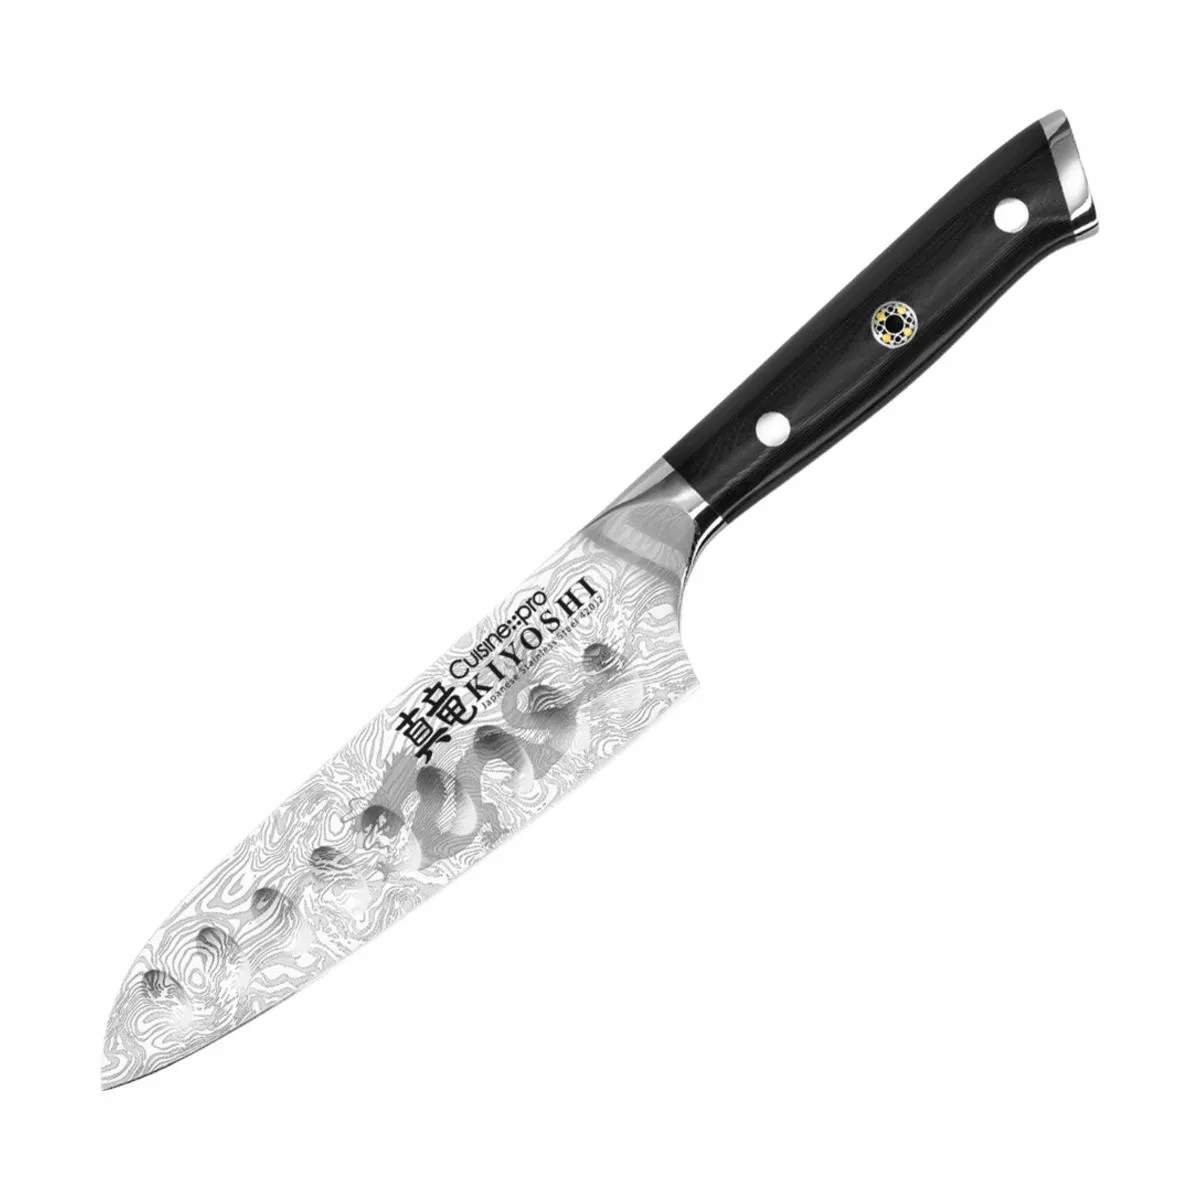 KIYOSHI™ Santoku Try Me Kniv, sølv/sort, large